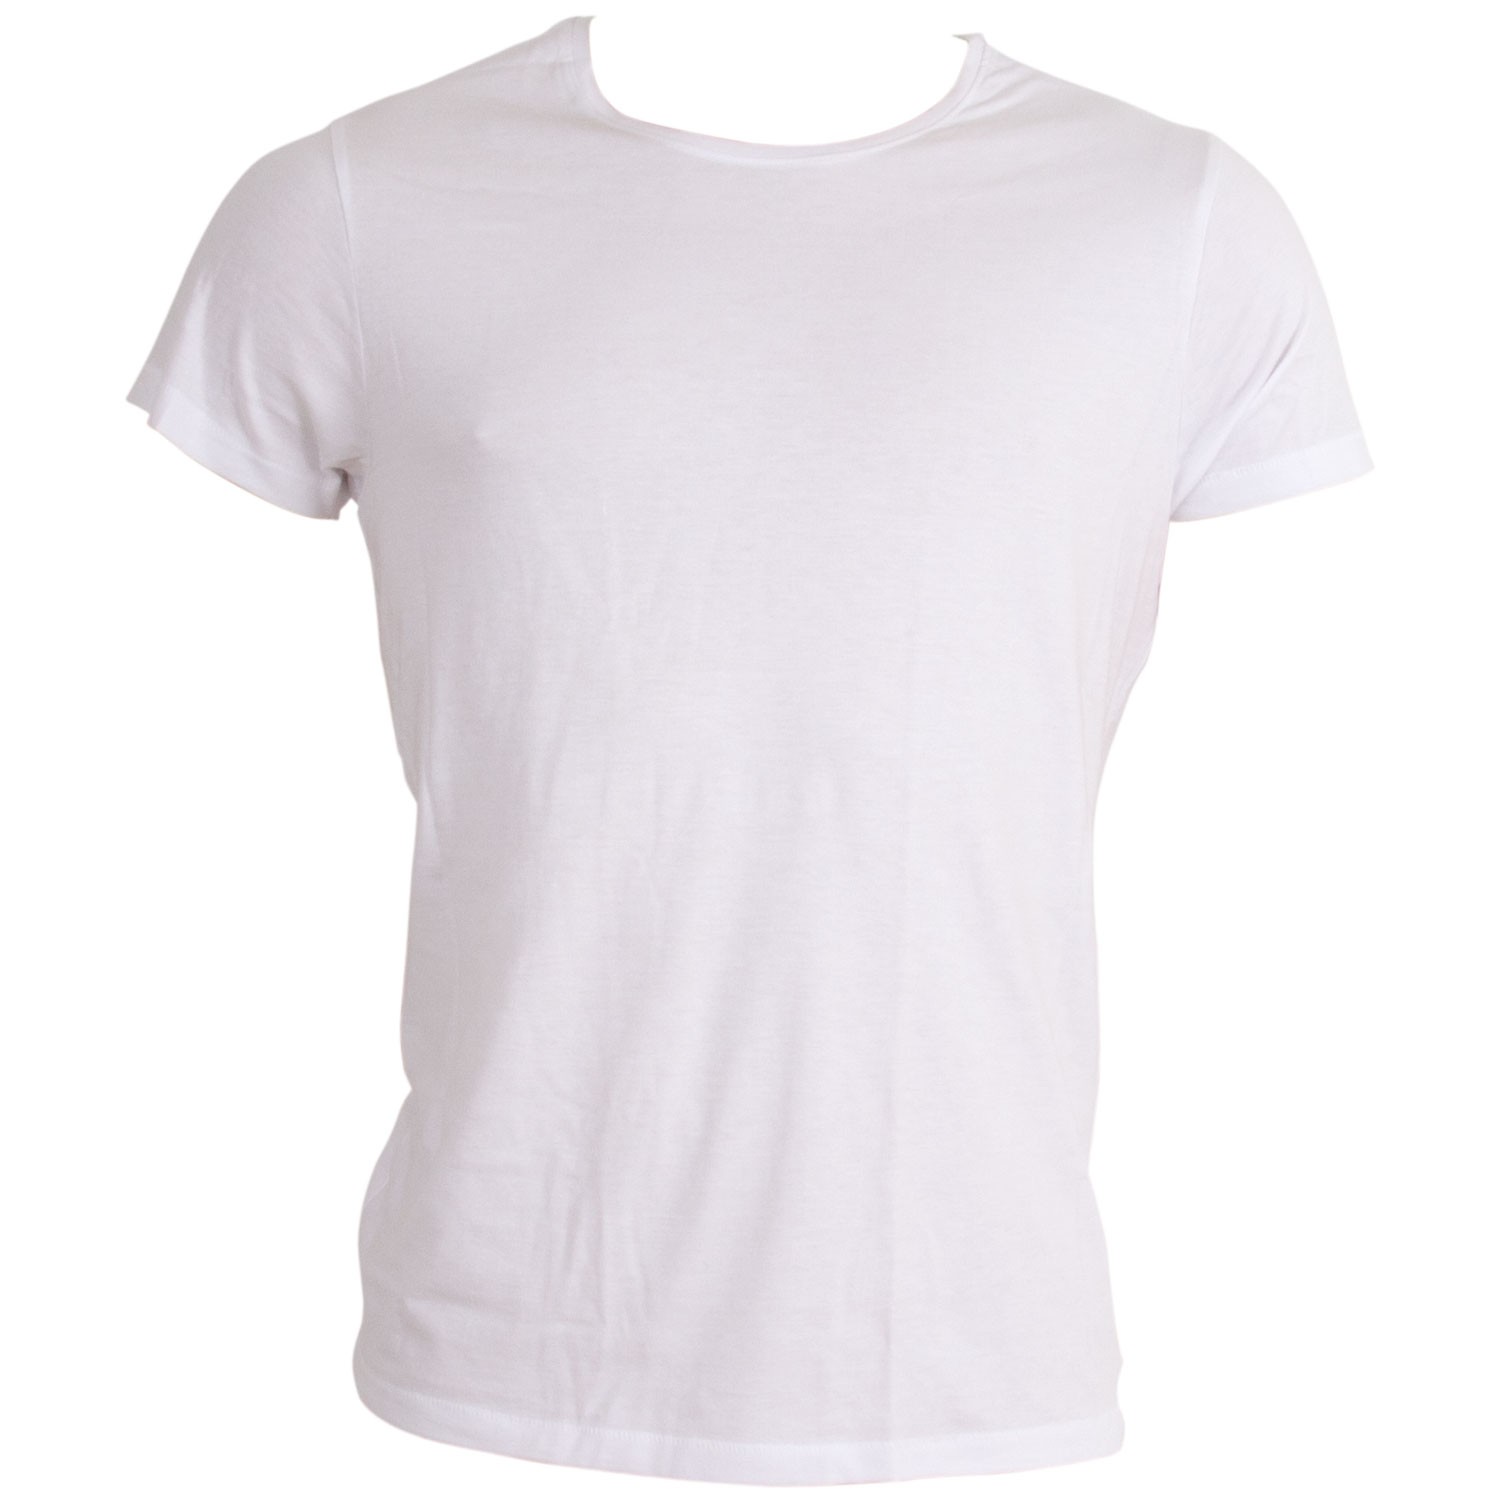 Whipstitch T-shirt White